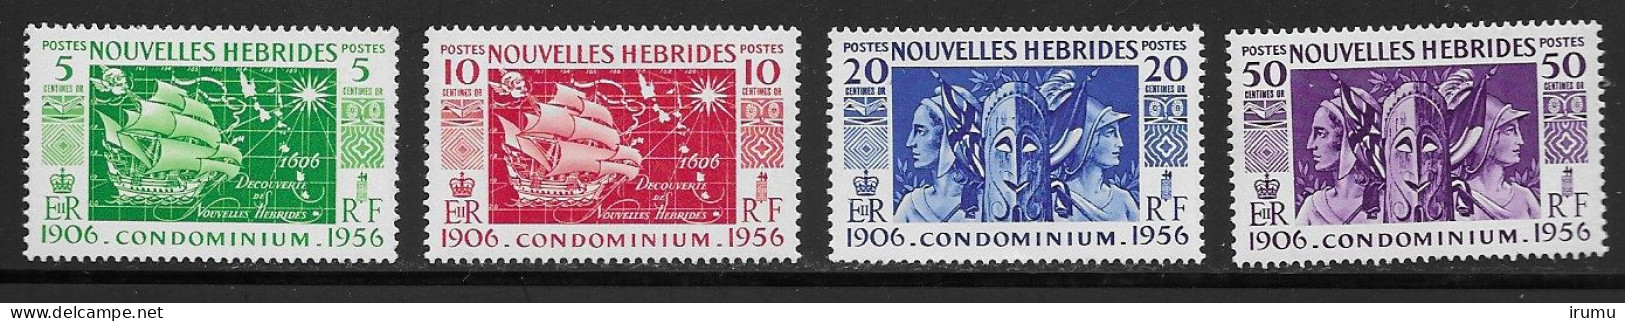 Nlle Hébrides 1956 Série Complète * (Y&T 167-170) Vc 8.5 EUR (SN 2103) - Unused Stamps